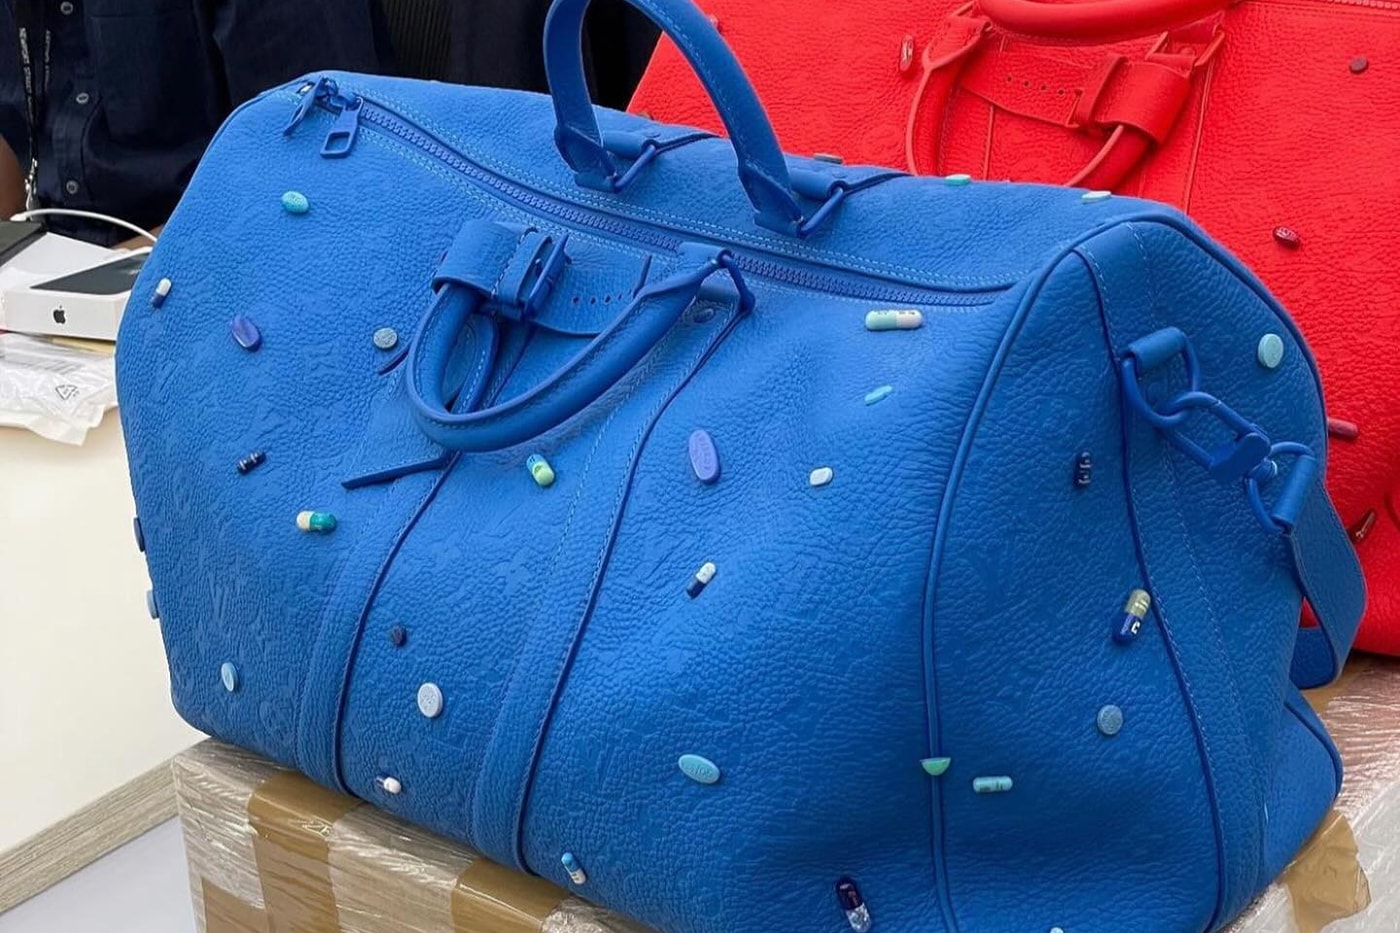 ダミアンハーストとルイヴィトンが錠剤を装飾したコラボキーボルを発売？ First Look at the Rumored Damien Hirst x Louis Vuitton Keepall Bag pharrell williams menswear pills collaboration juxtaposition blue red 